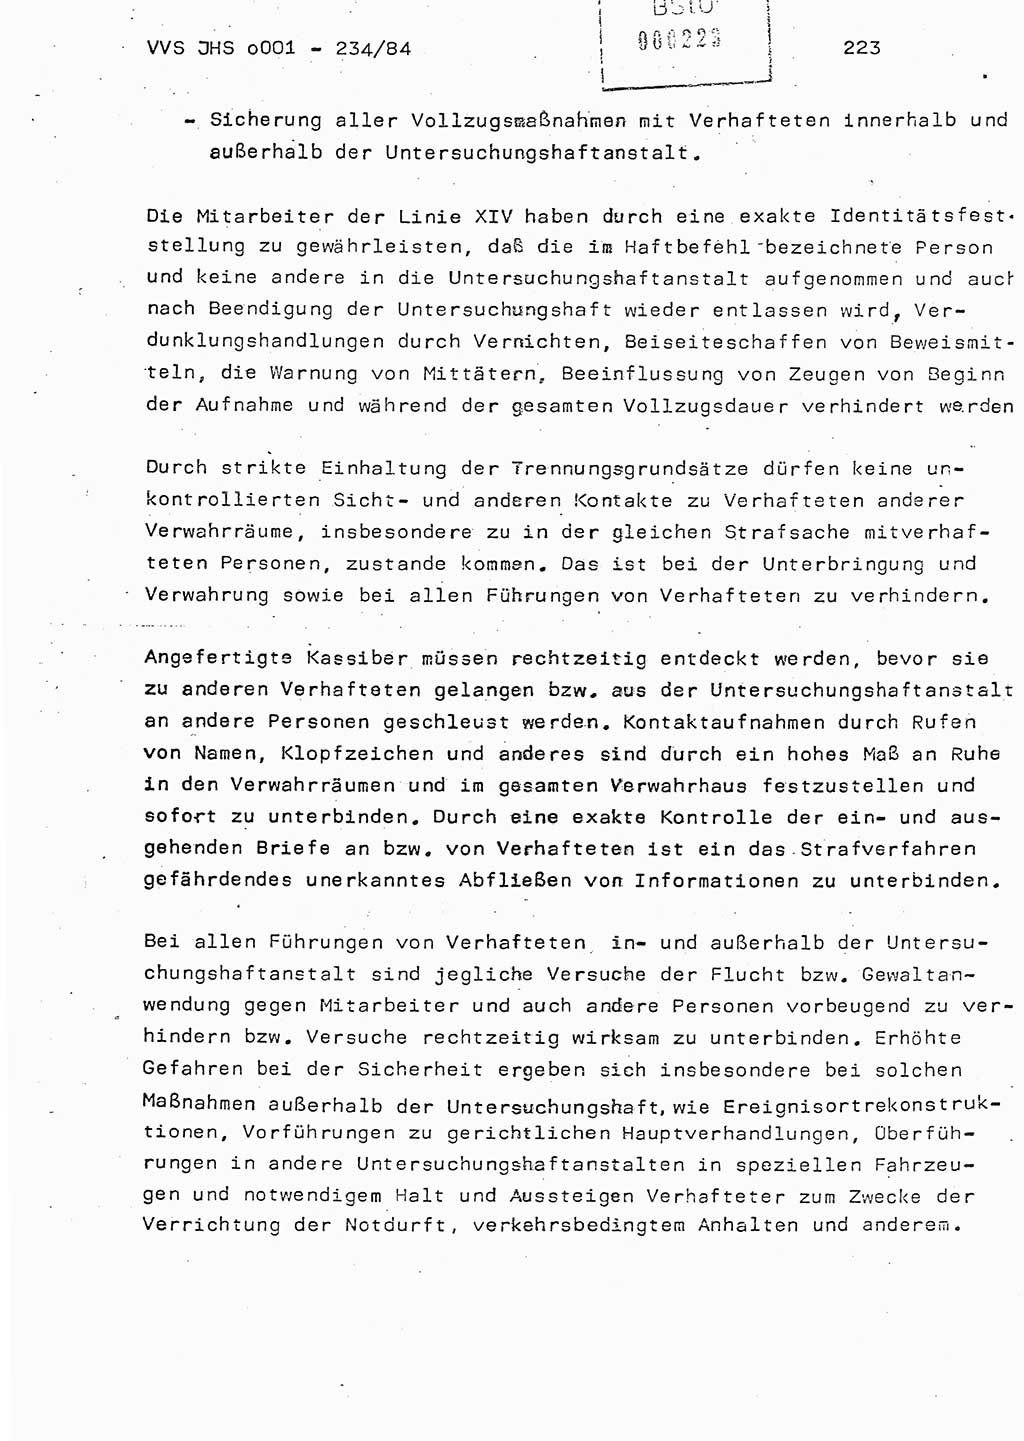 Dissertation Oberst Siegfried Rataizick (Abt. ⅩⅣ), Oberstleutnant Volkmar Heinz (Abt. ⅩⅣ), Oberstleutnant Werner Stein (HA Ⅸ), Hauptmann Heinz Conrad (JHS), Ministerium für Staatssicherheit (MfS) [Deutsche Demokratische Republik (DDR)], Juristische Hochschule (JHS), Vertrauliche Verschlußsache (VVS) o001-234/84, Potsdam 1984, Seite 223 (Diss. MfS DDR JHS VVS o001-234/84 1984, S. 223)